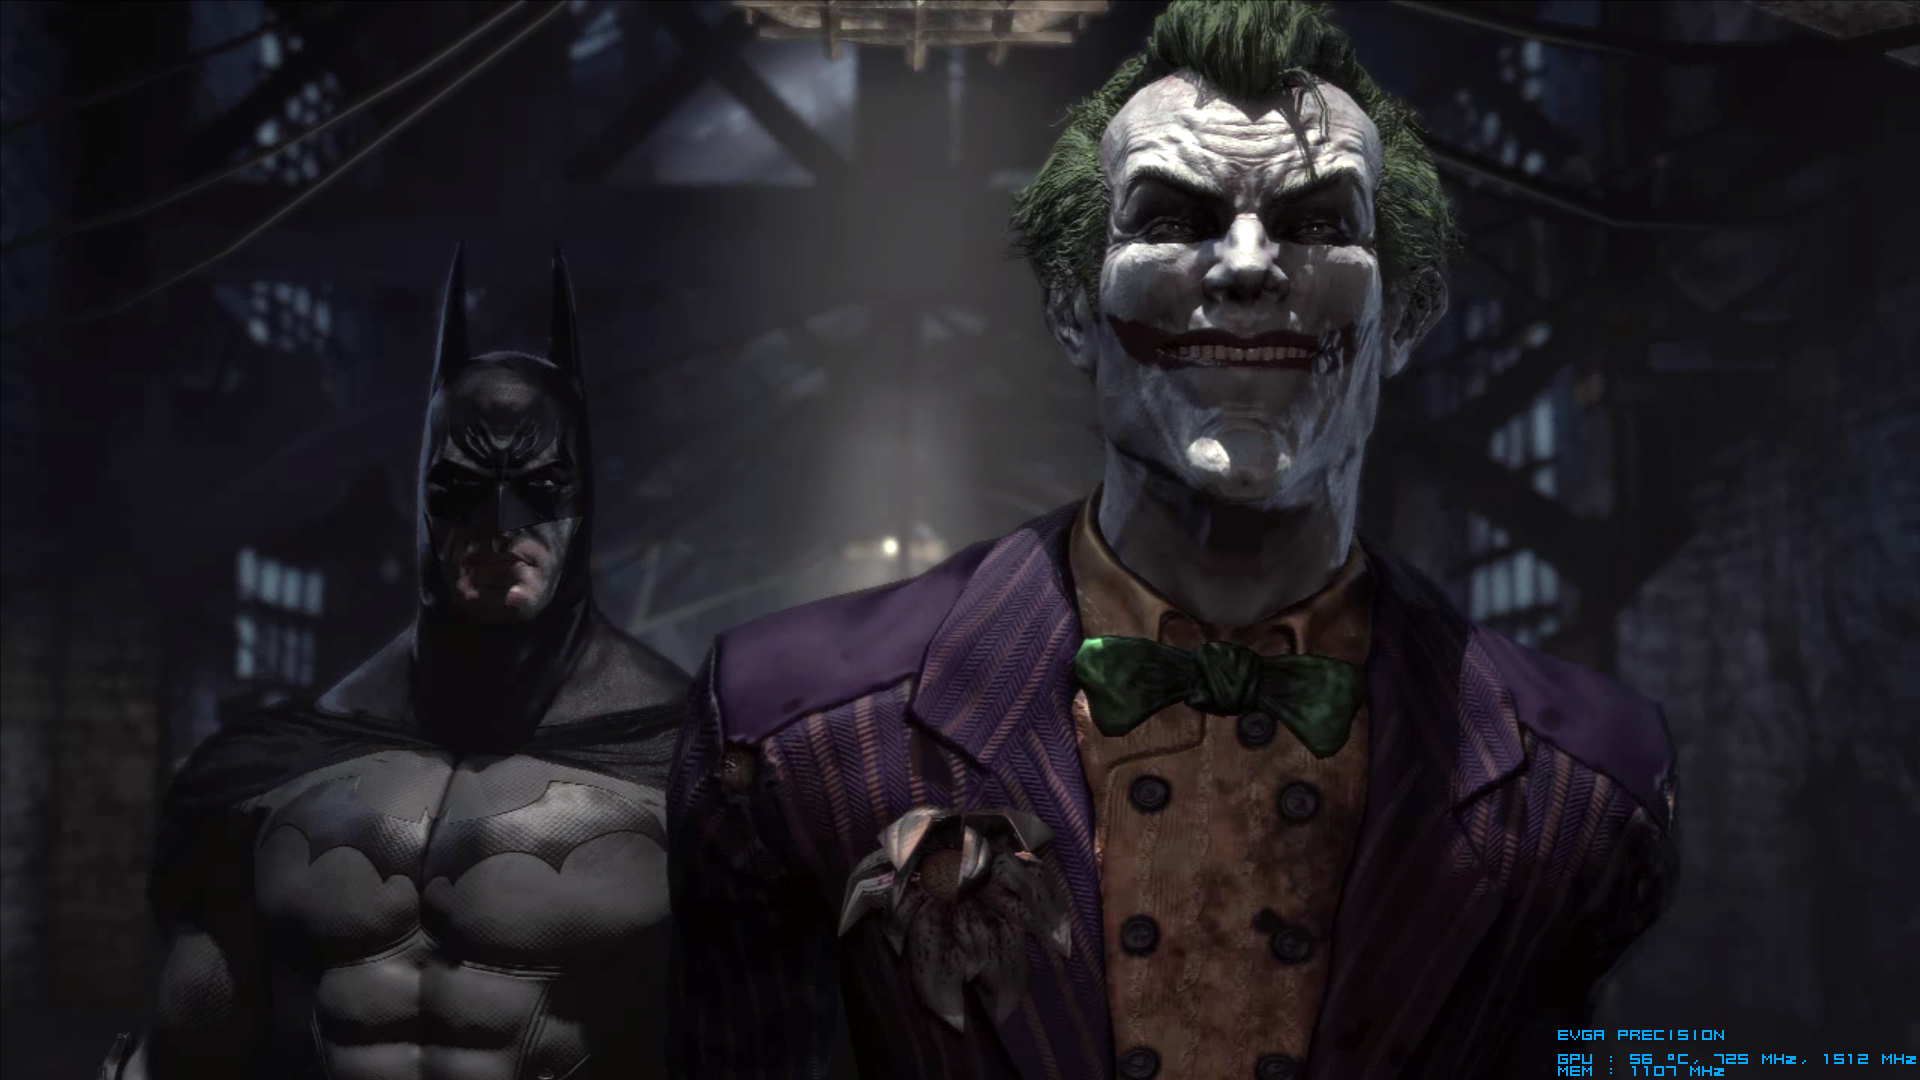 Batman Arkham Asylum Joker , HD Wallpaper & Backgrounds